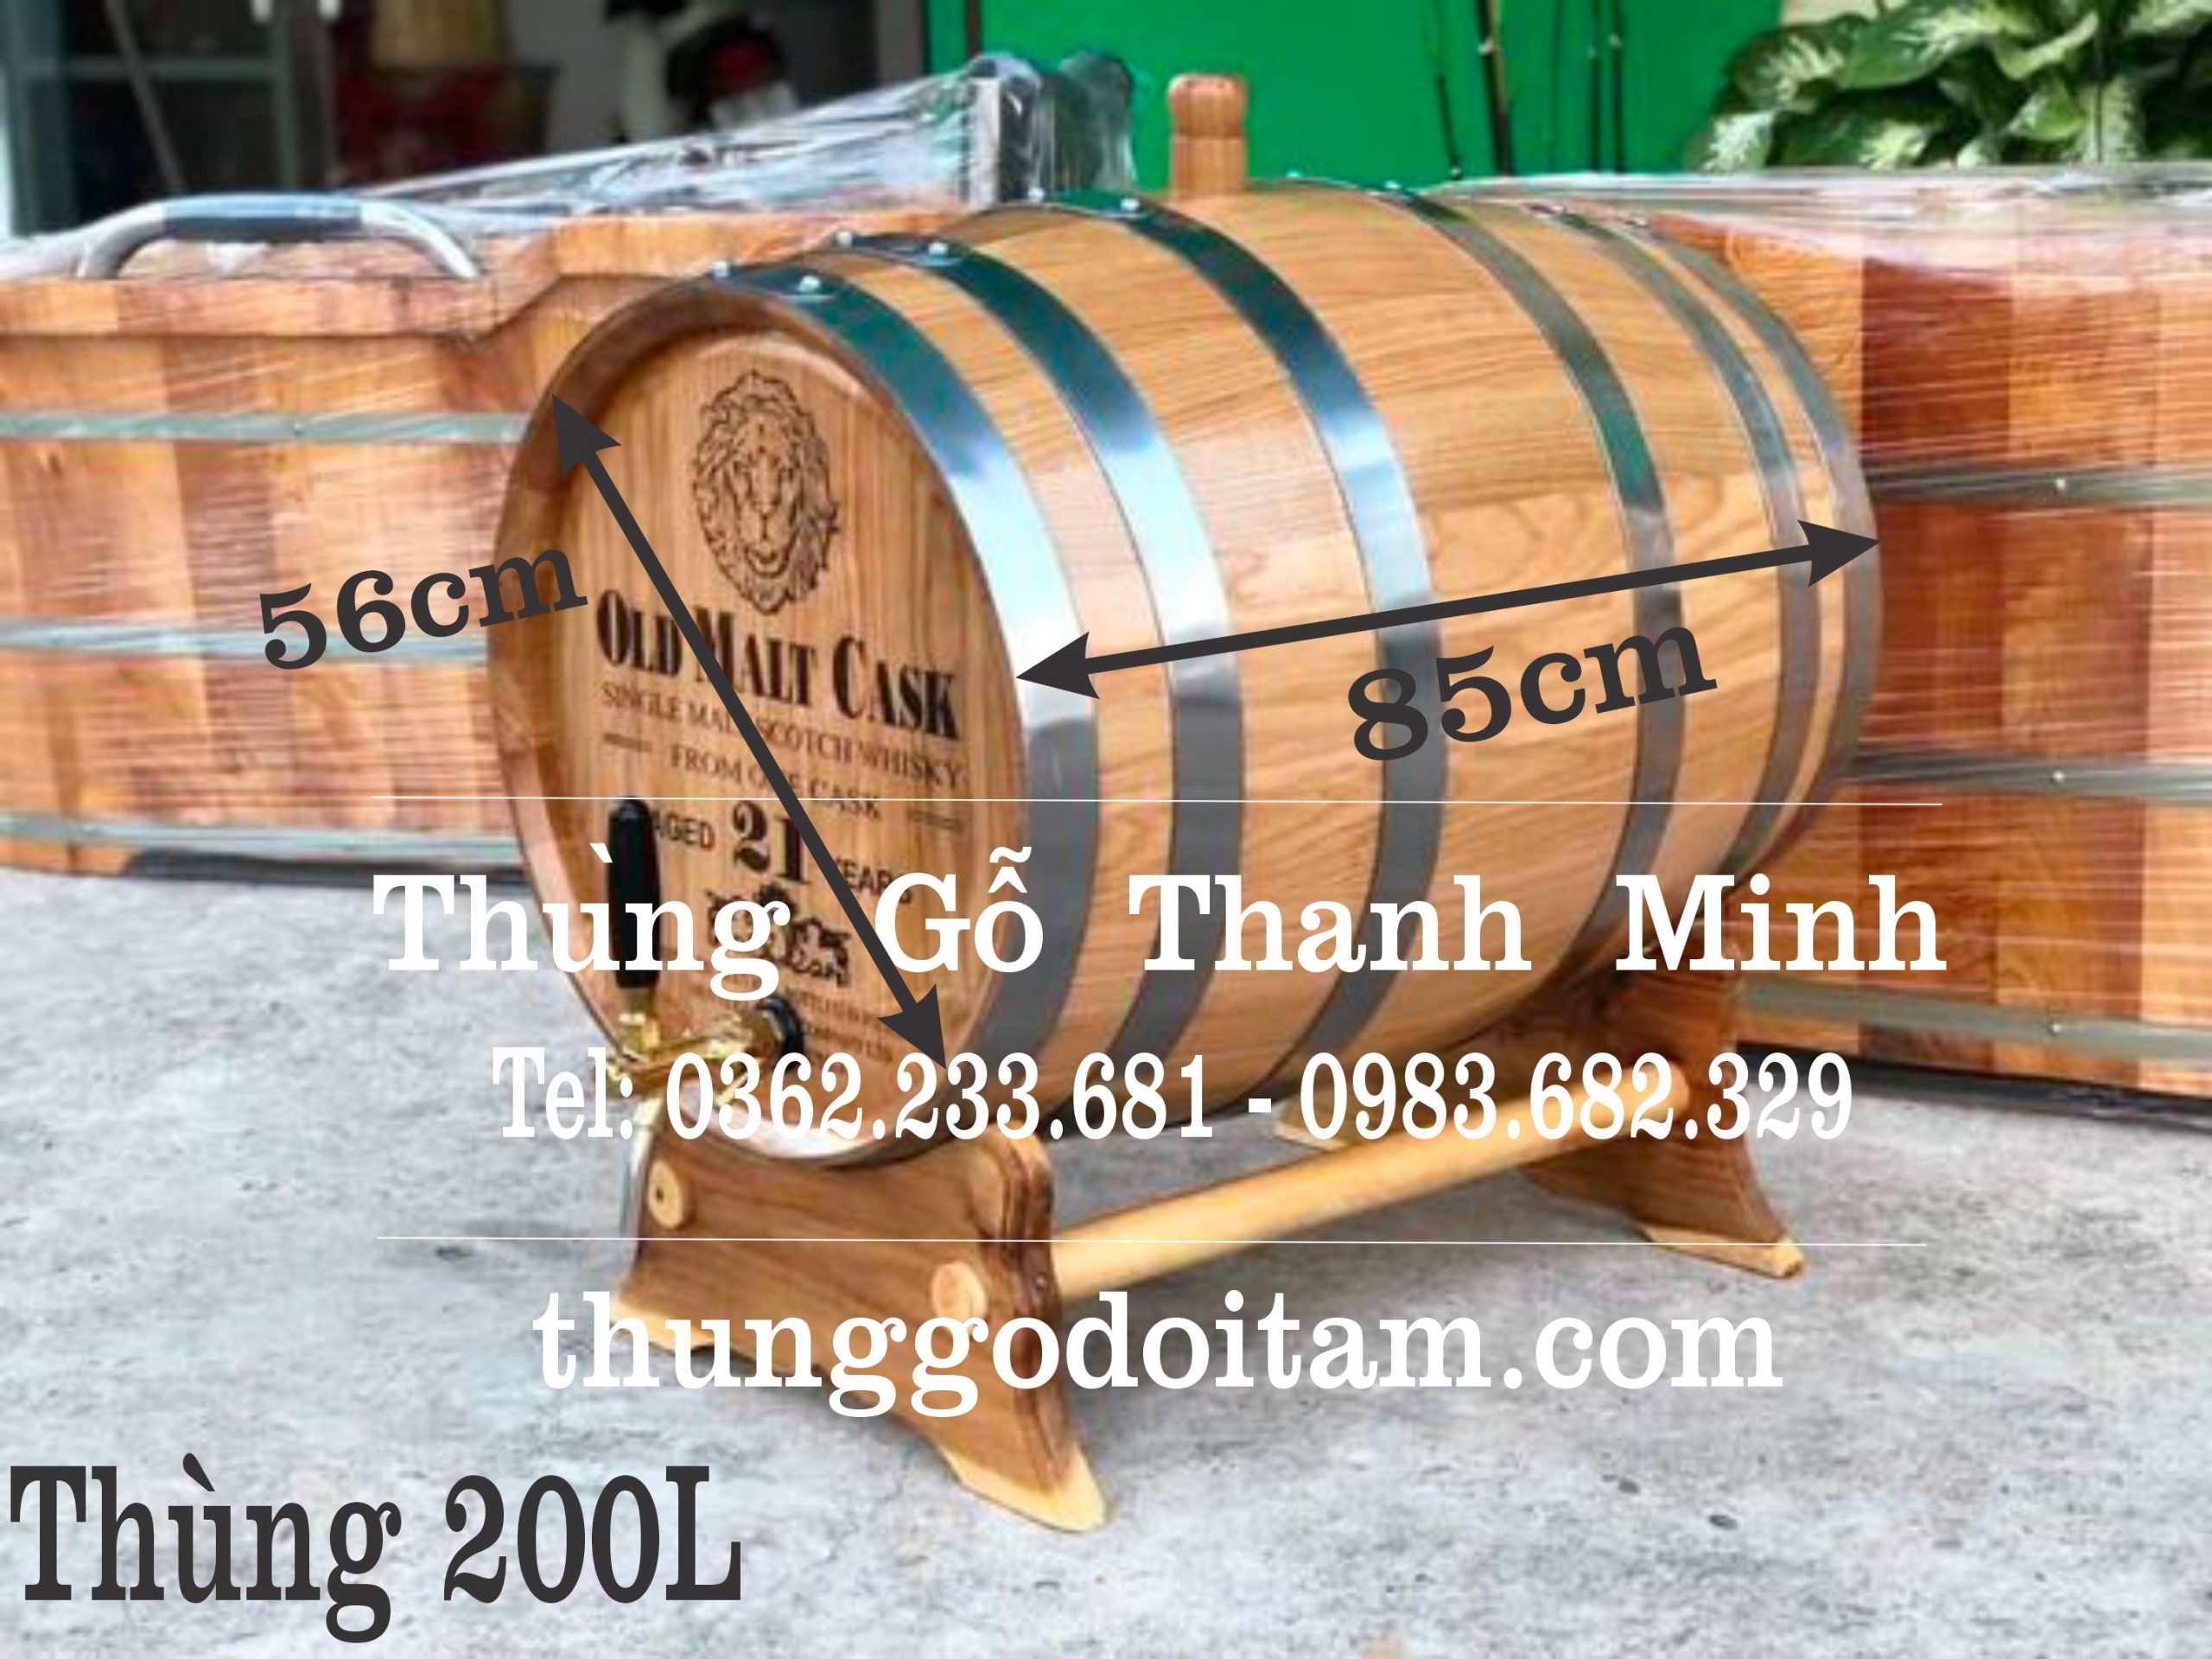 Thùng gỗ sồi ngâm rượu 200L - Xưởng Thanh Minh số 1 về chất lượng.